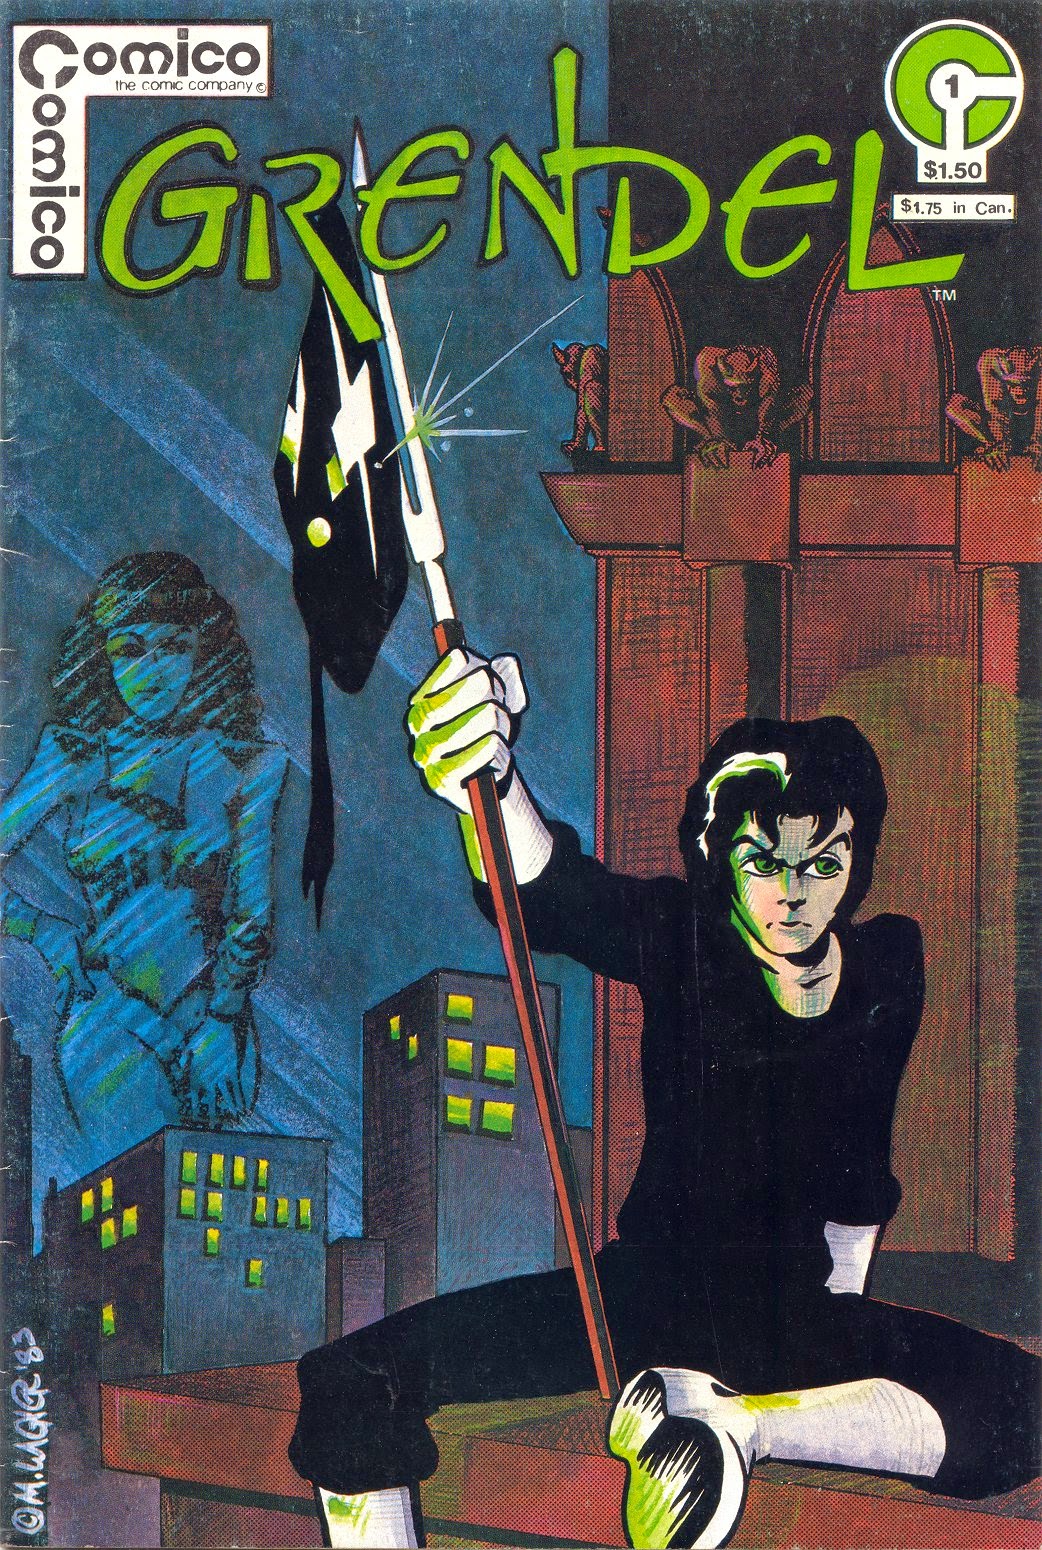 Regressando com o Poder do Rei - Cap. 09 - Leia comics em português!